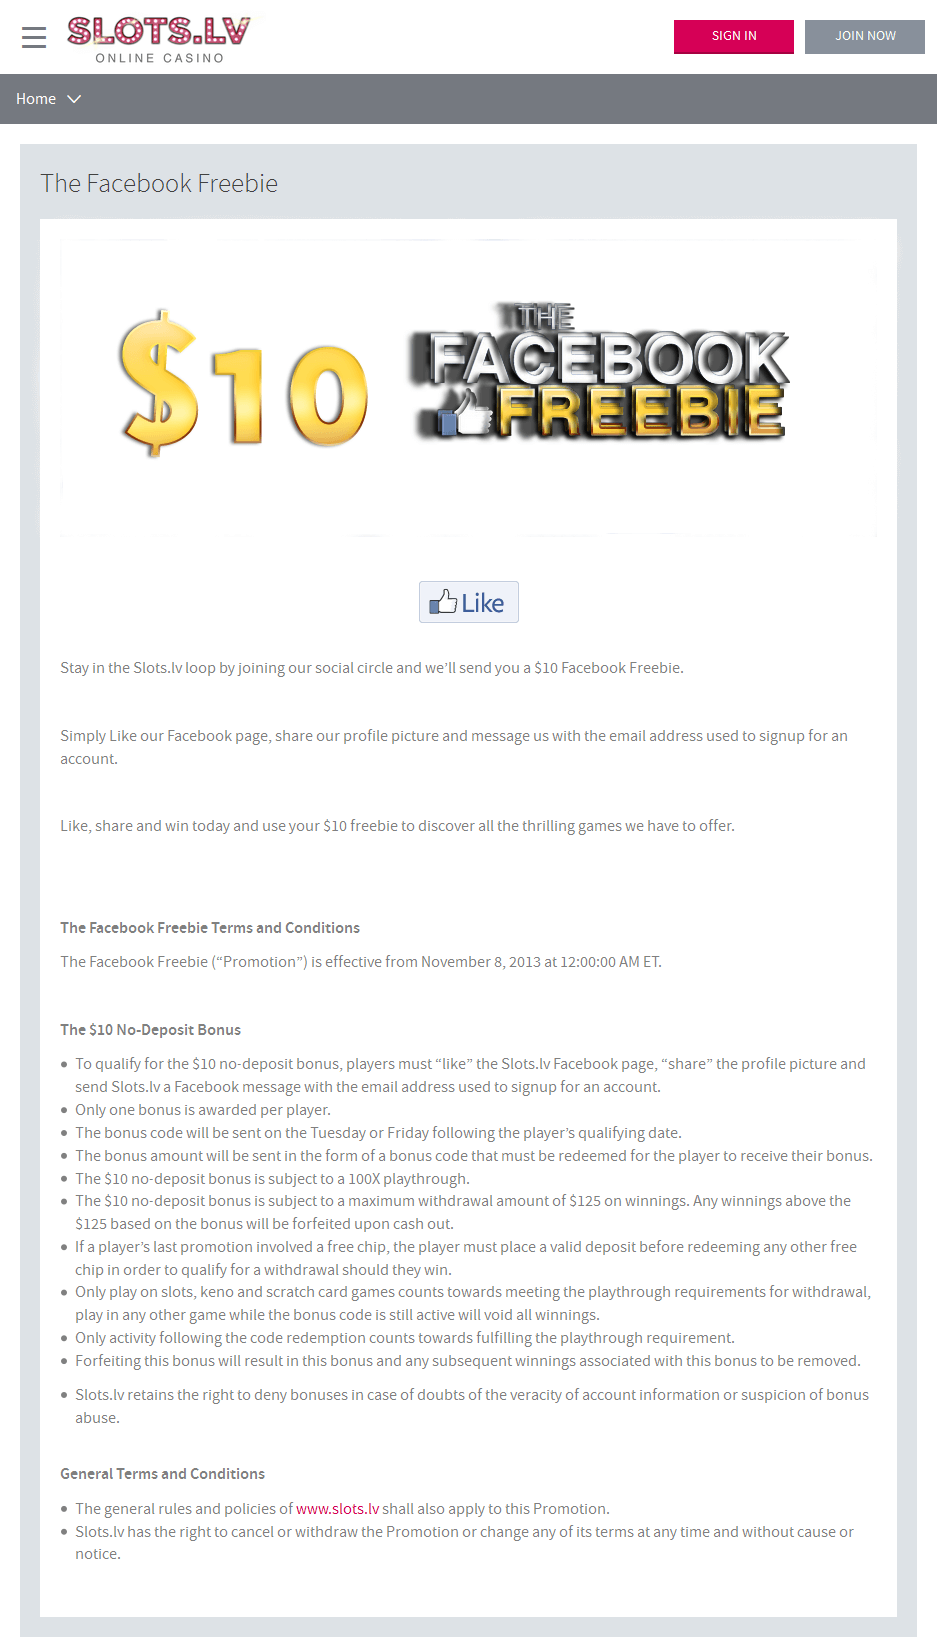 planet 7 casino $100 no deposit bonus codes